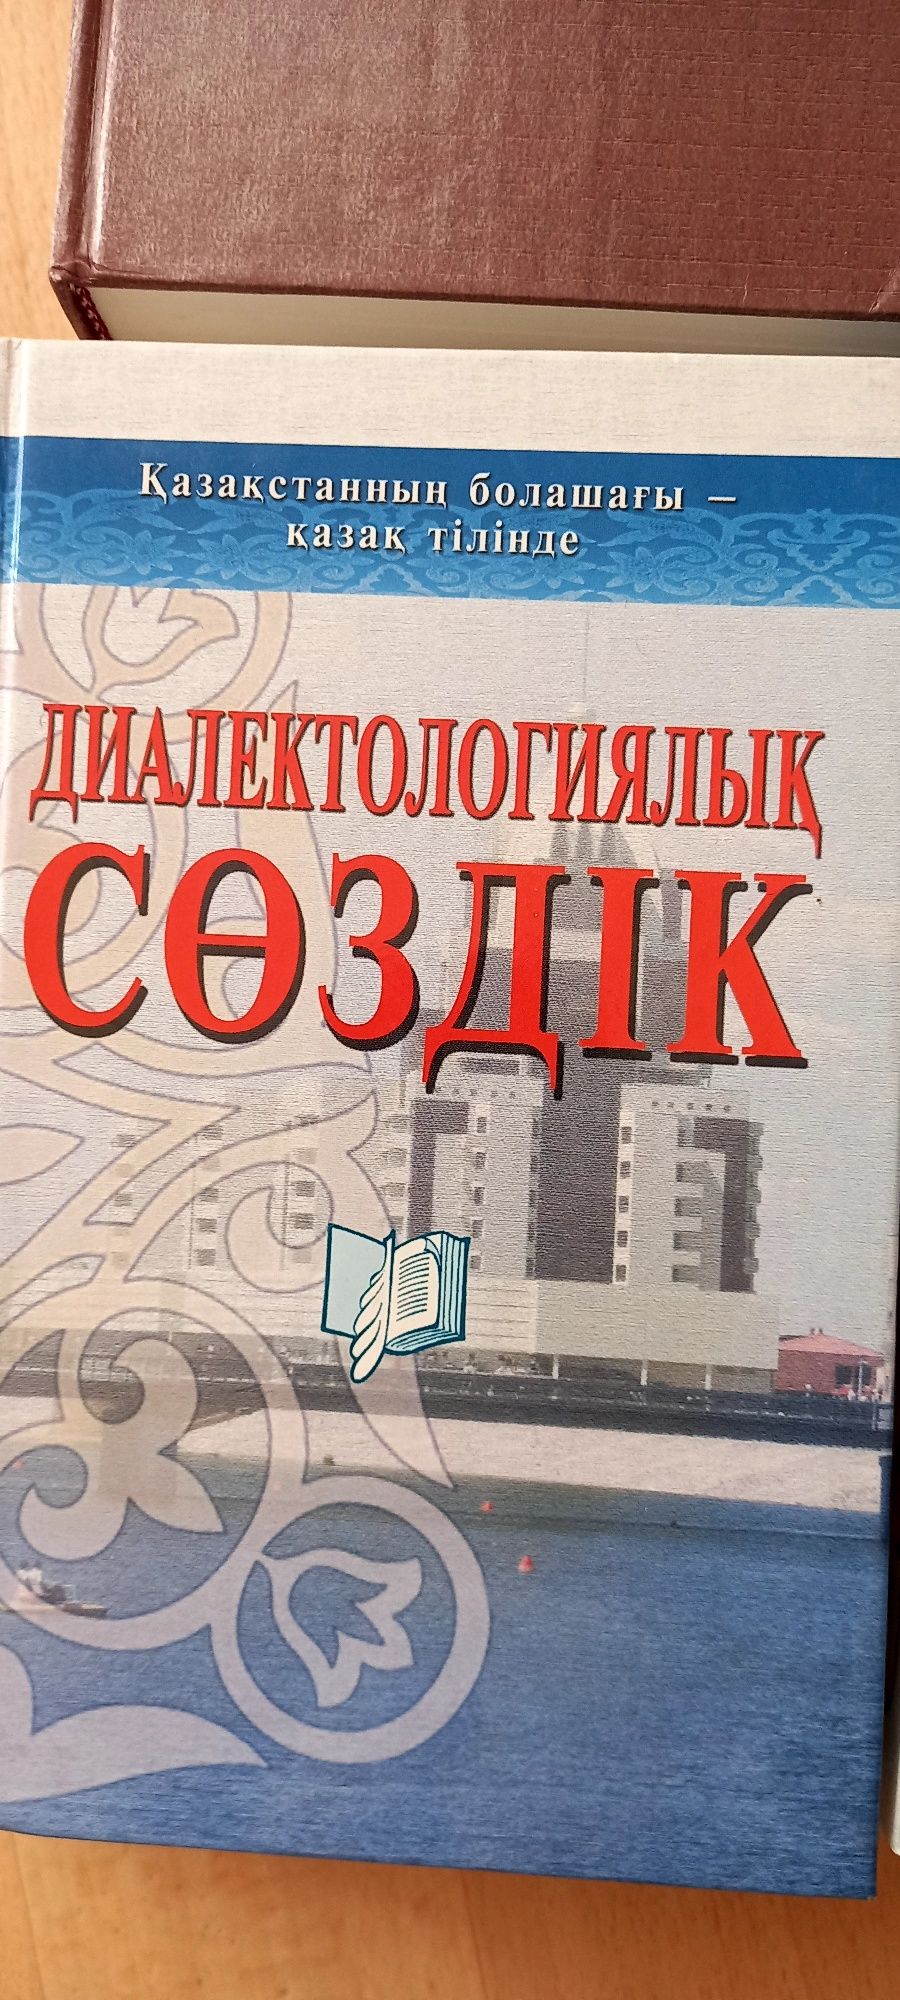 Книги , словарь казахско -русский